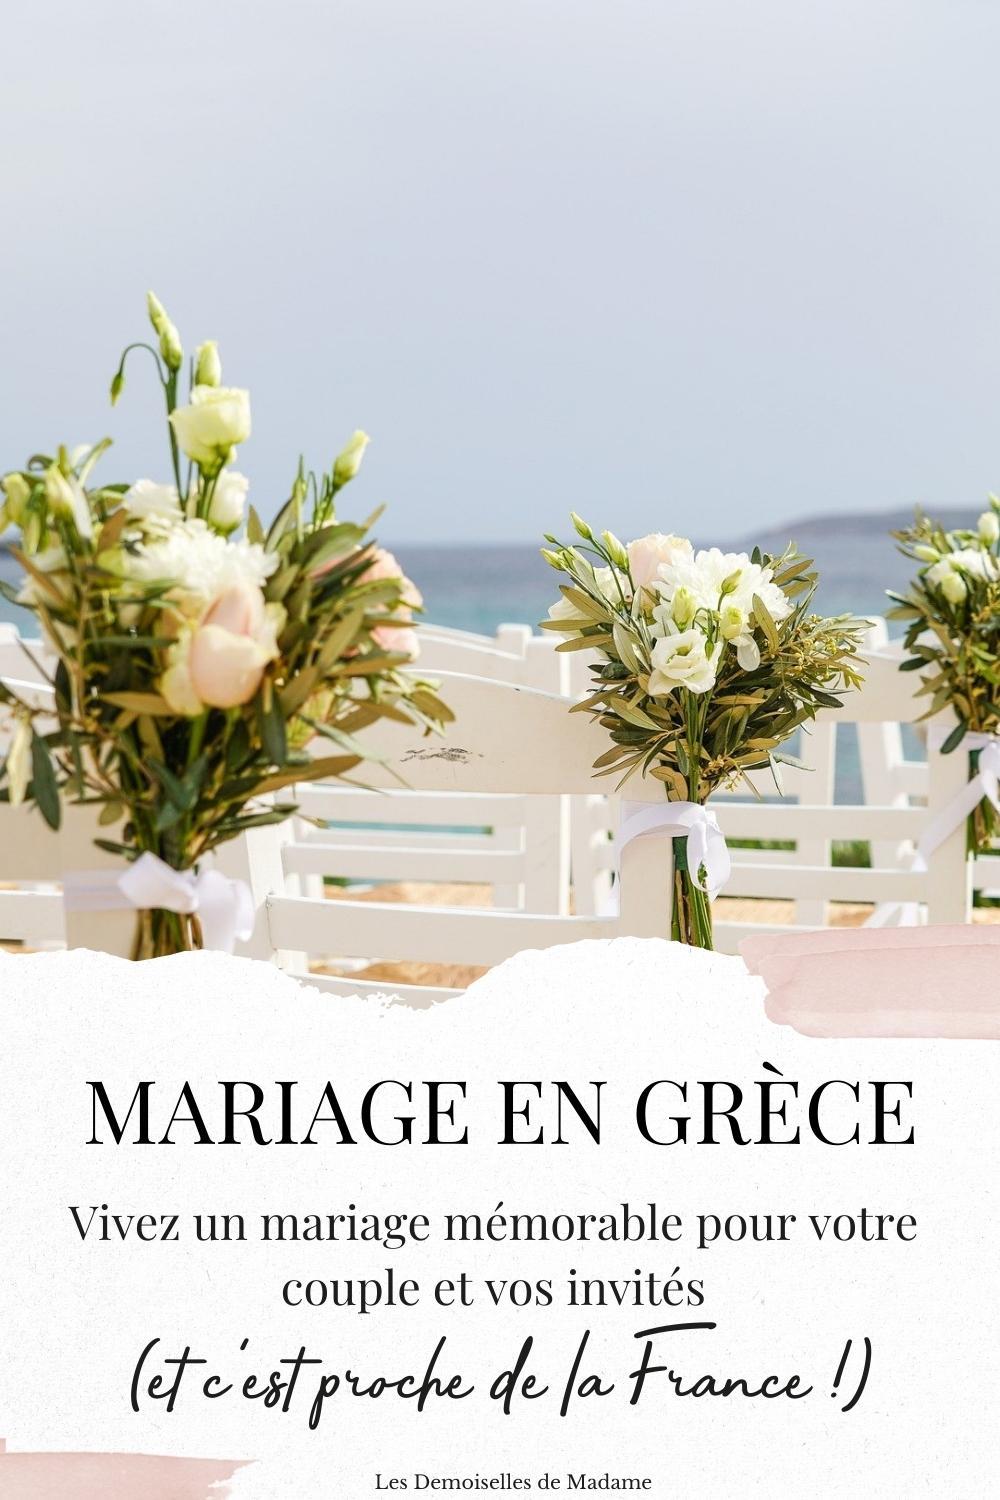 Mariage en grece